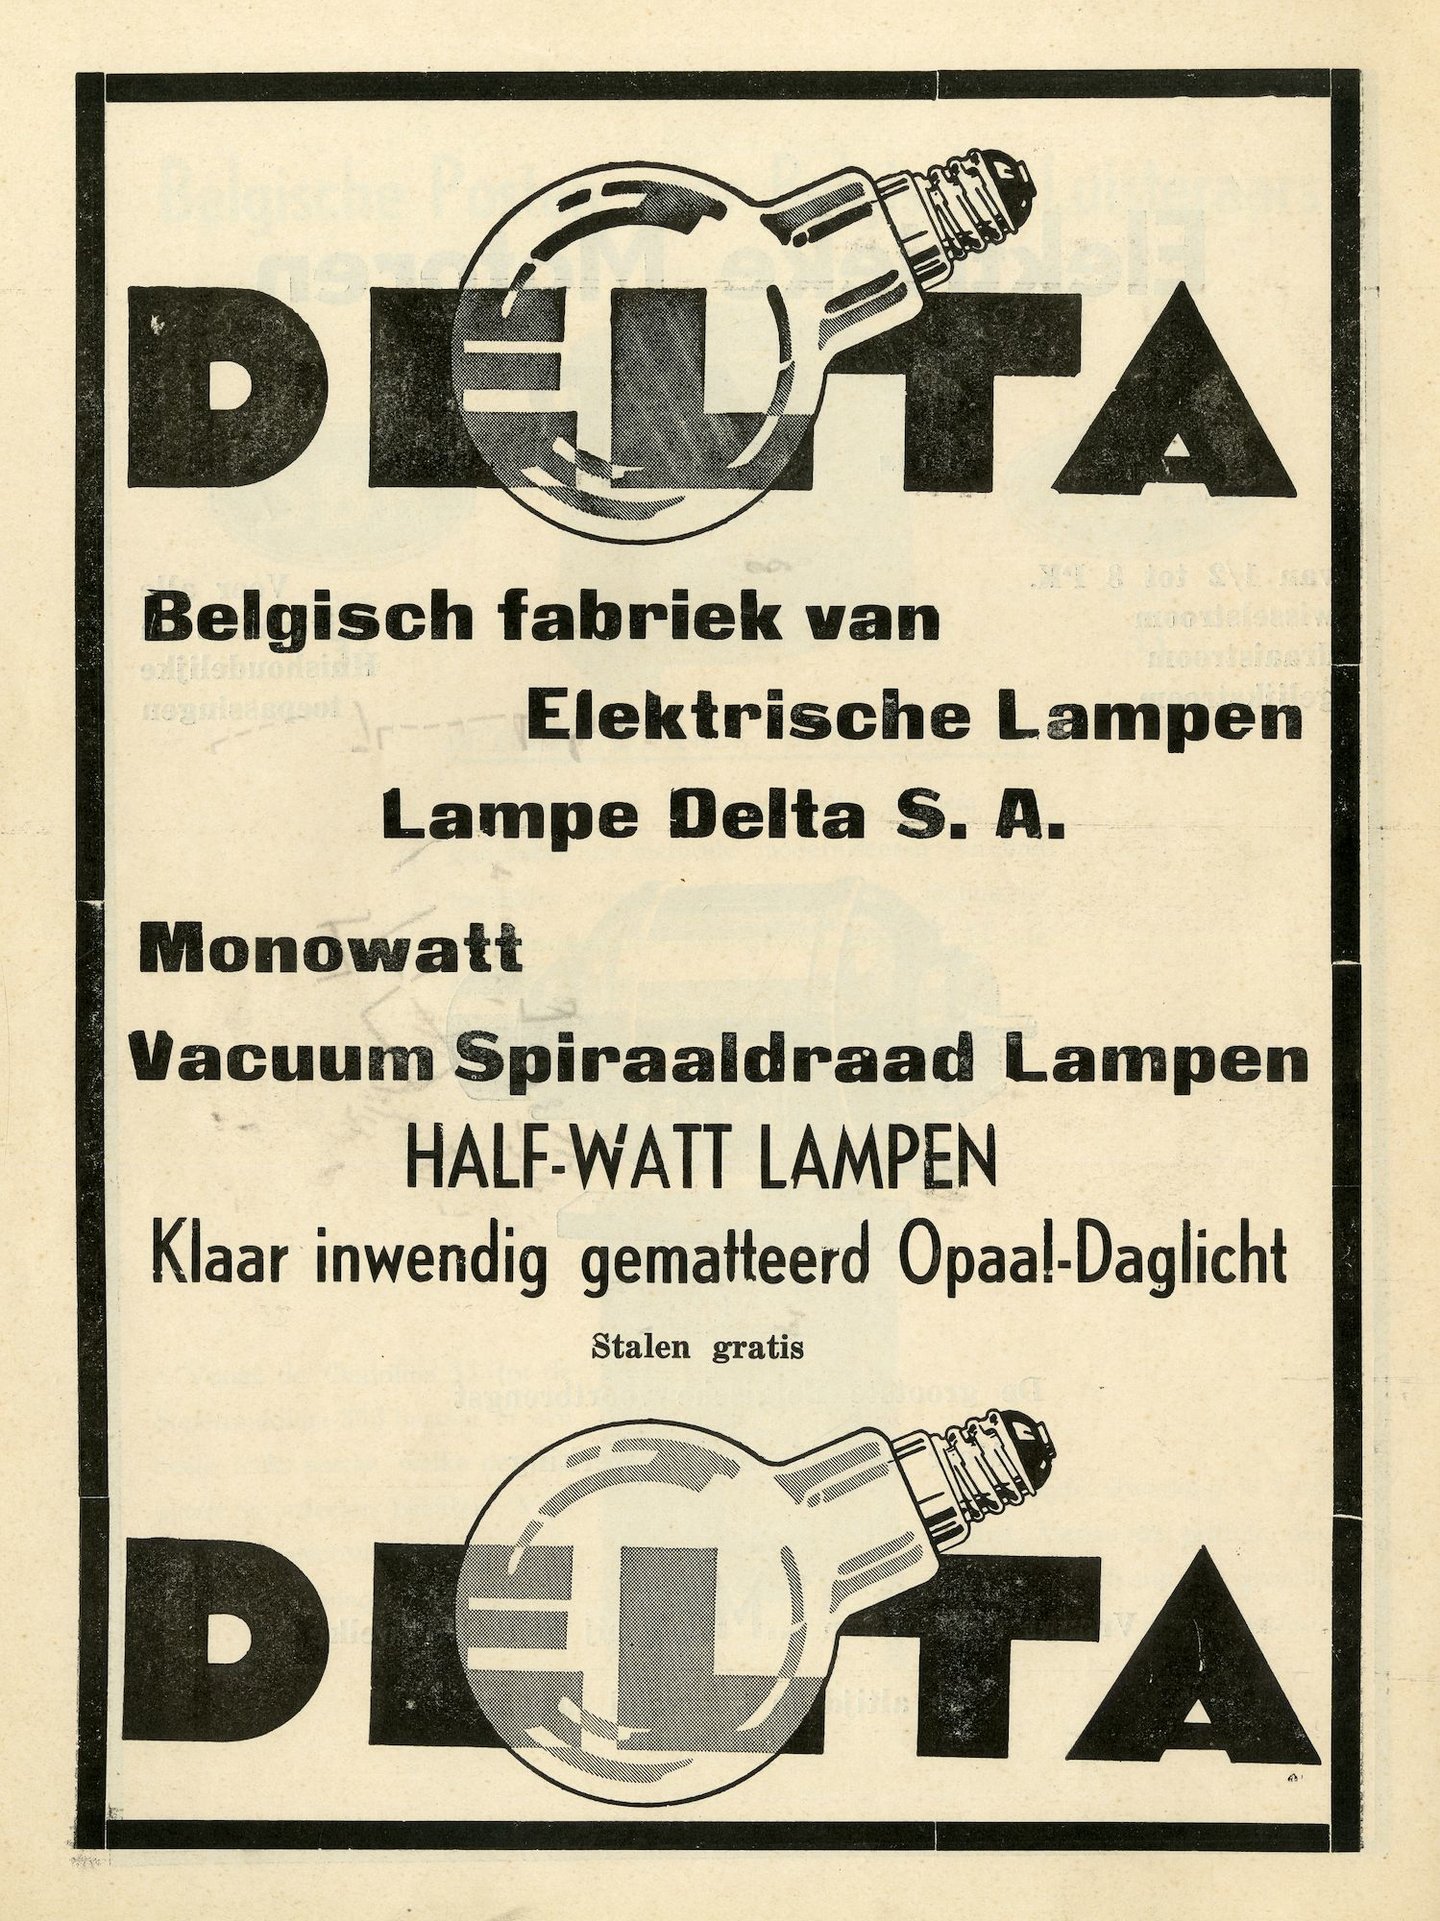 Reclame voor lampen van het merk Delta